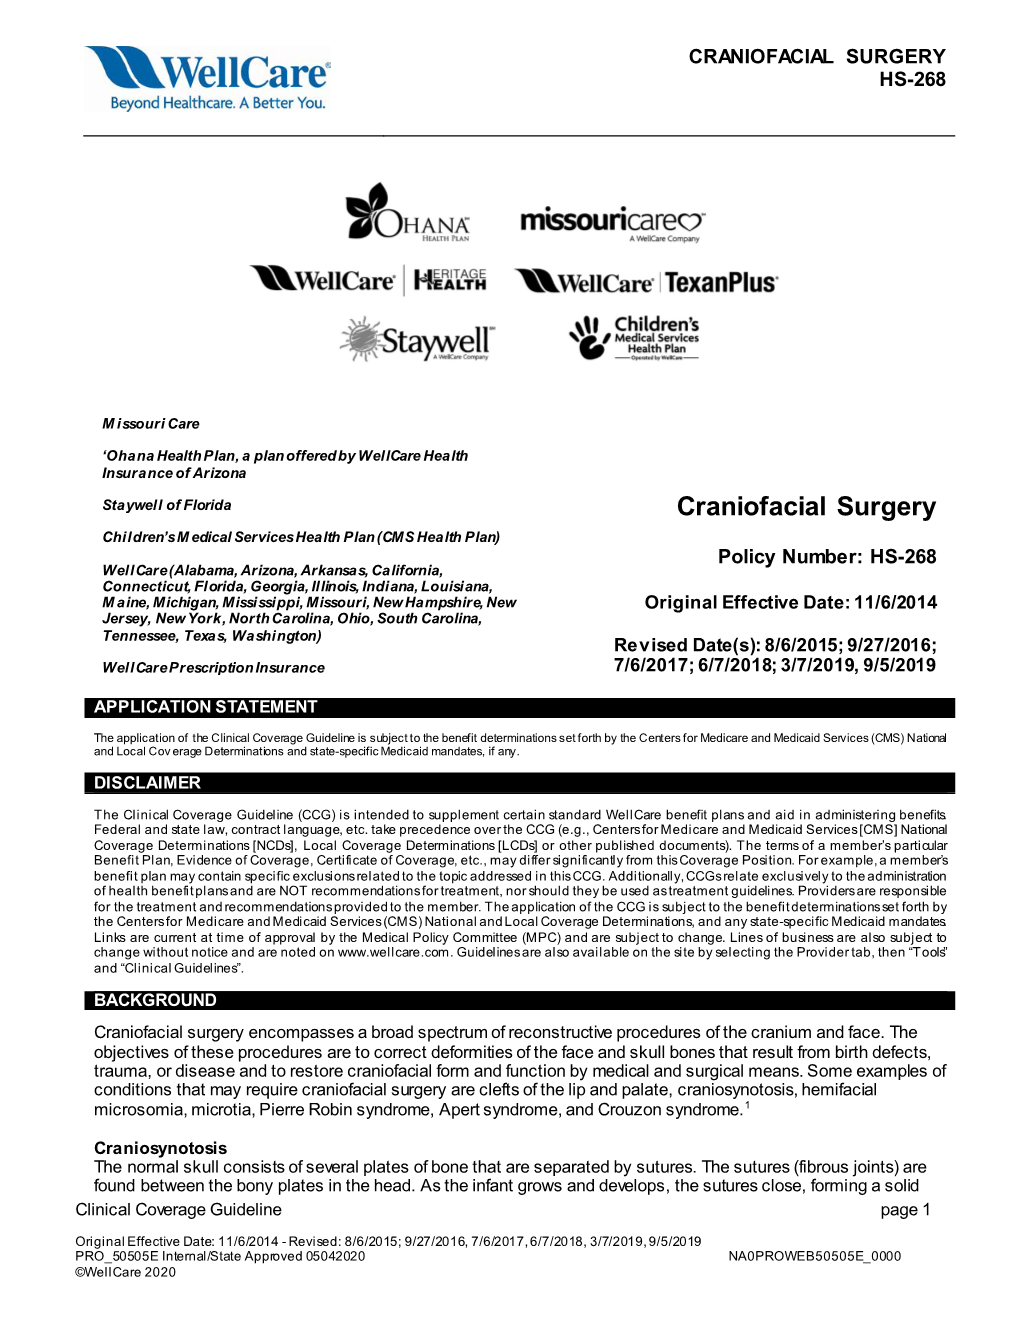 Craniofacial Surgery Hs-268